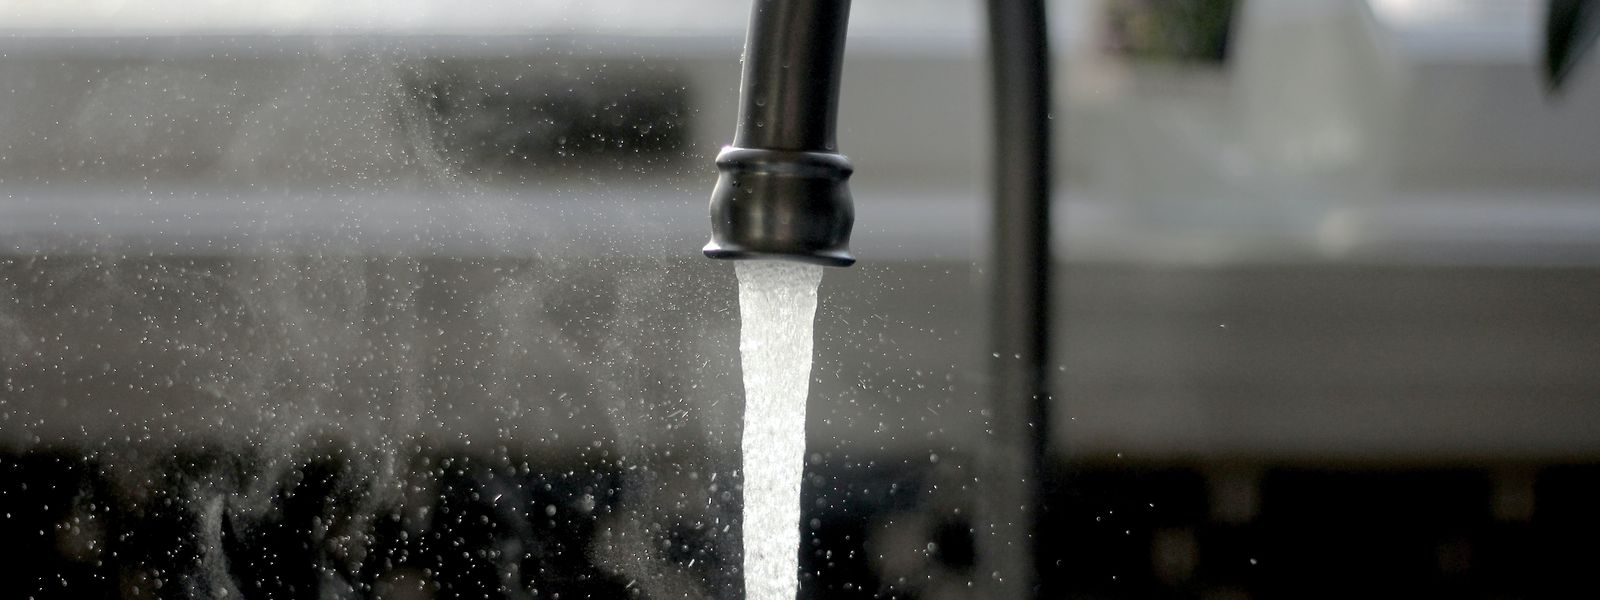 Les communes doivent vendre l'eau à un prix qui couvre leurs coûts.